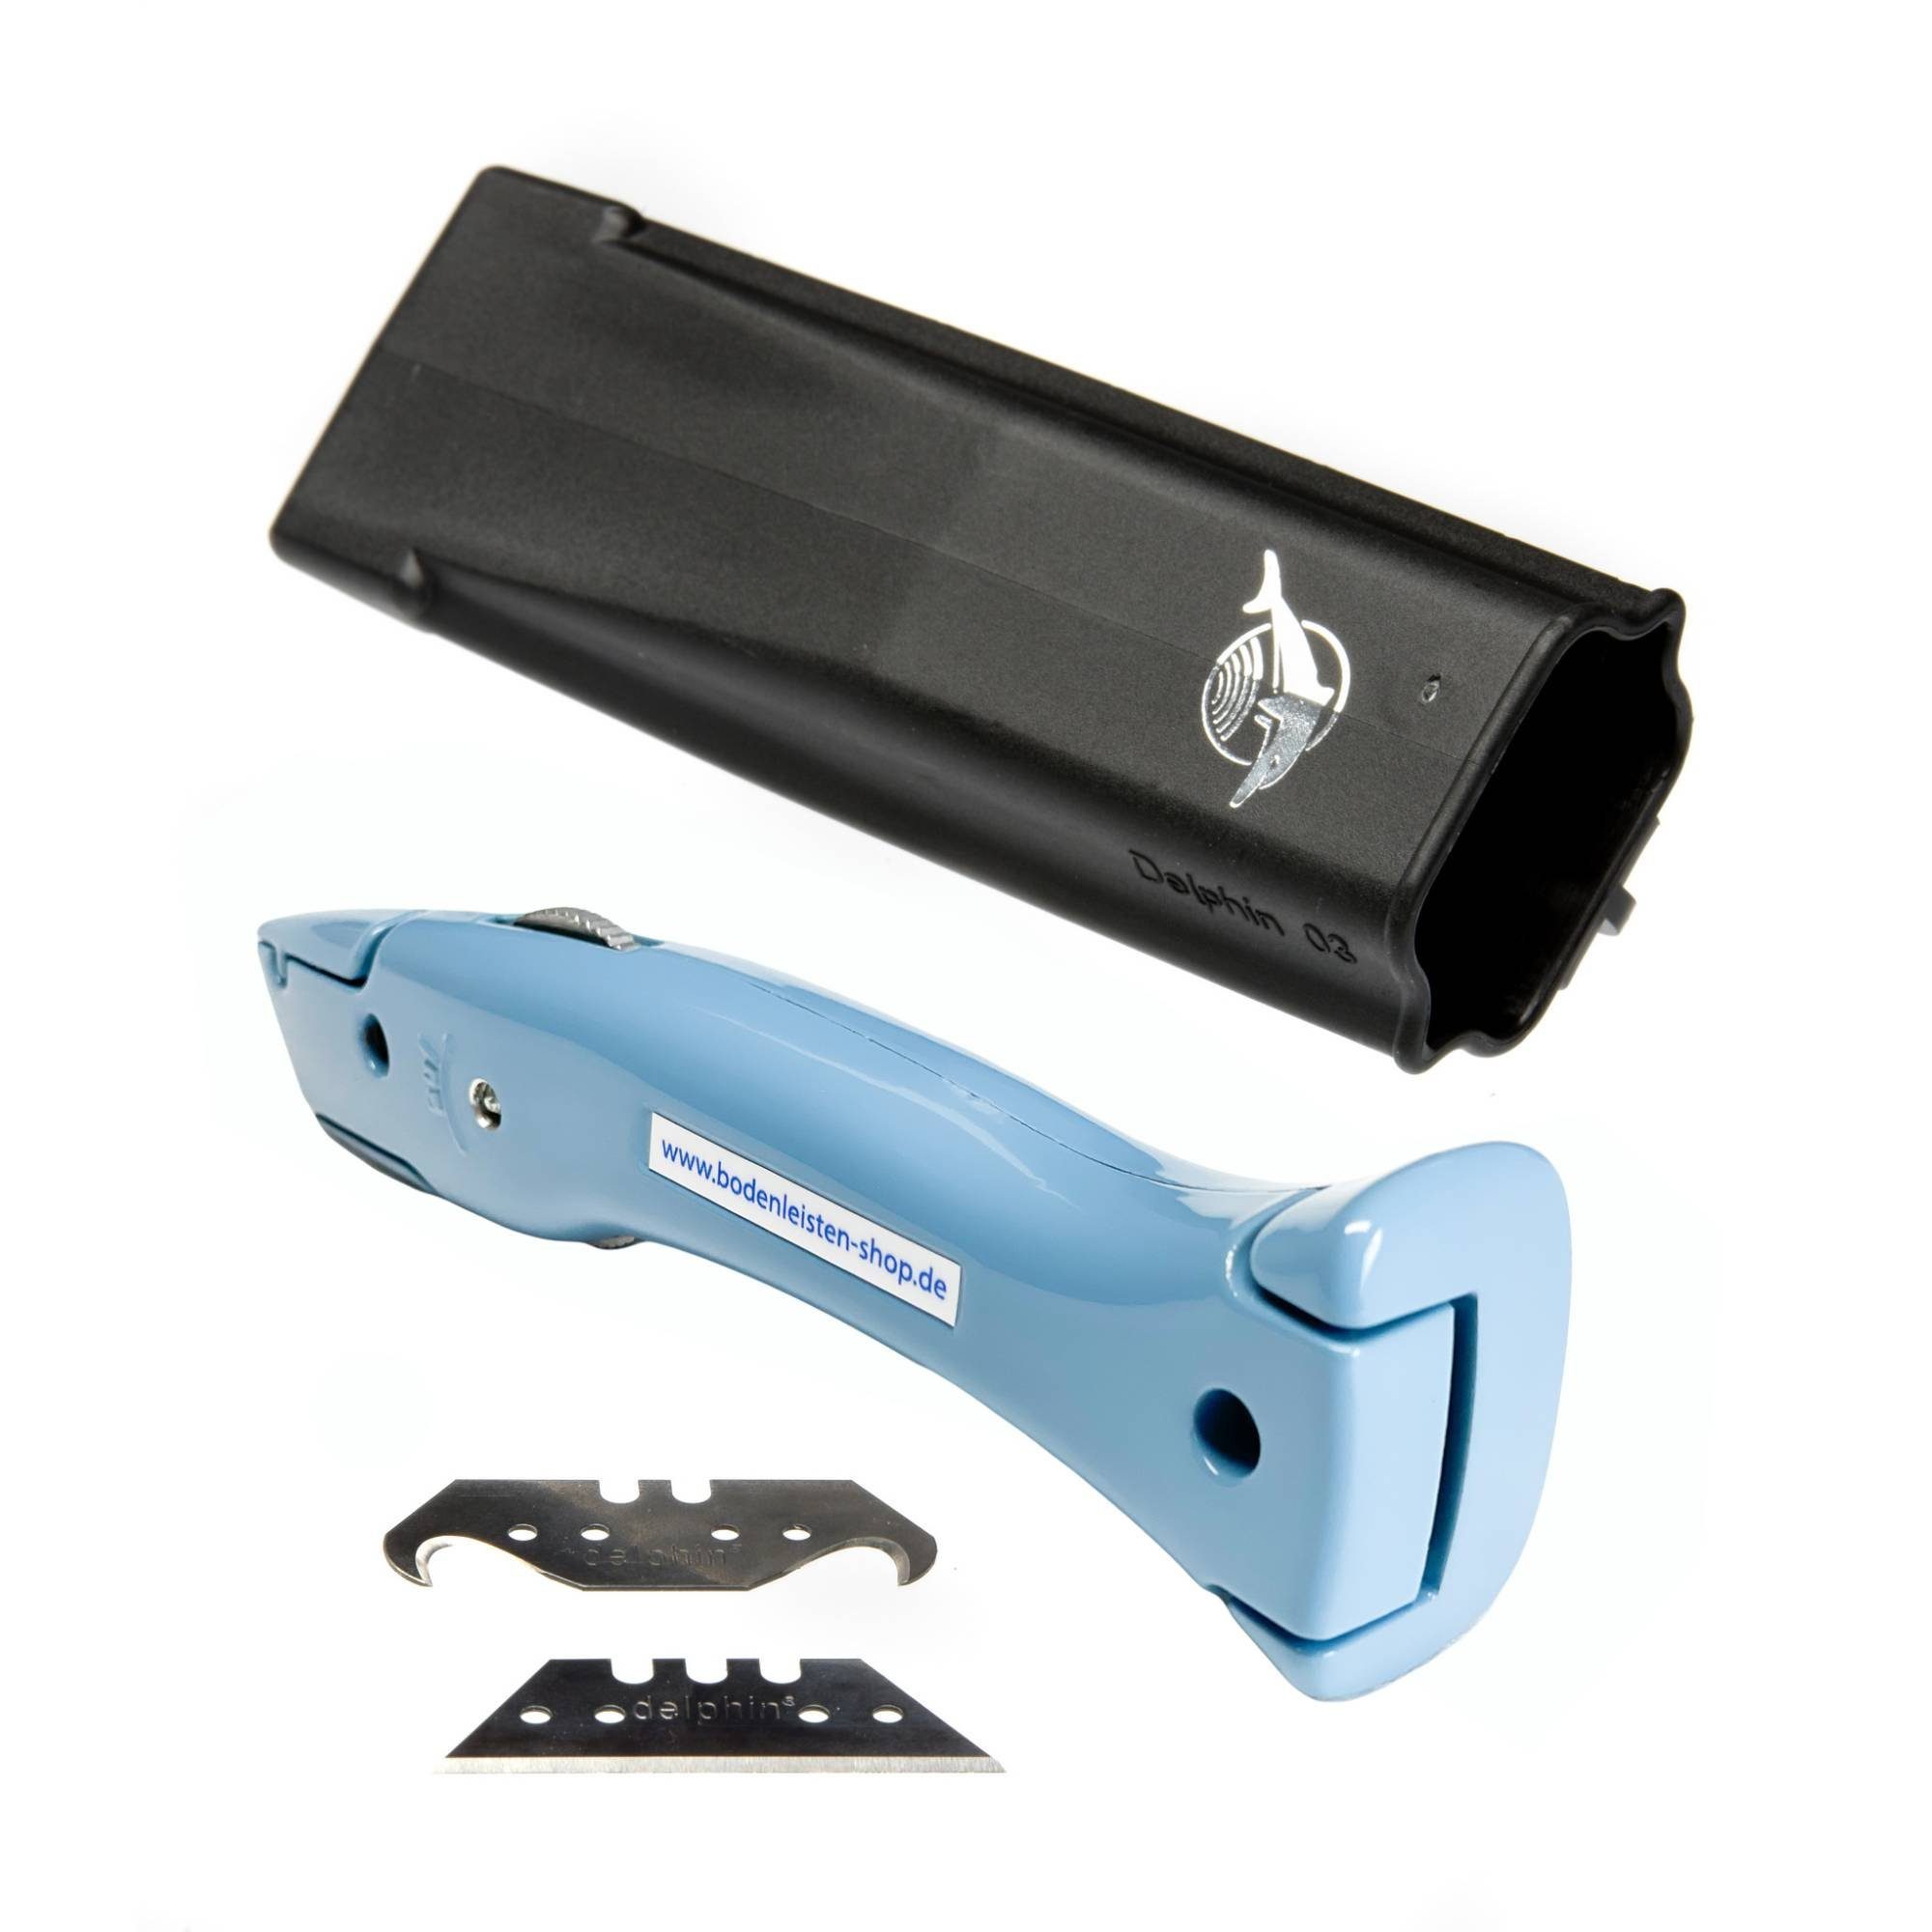 Delphin Style-Edition Pastellblau Delphin®-03 Cutter Universalmesser Cuttermesser